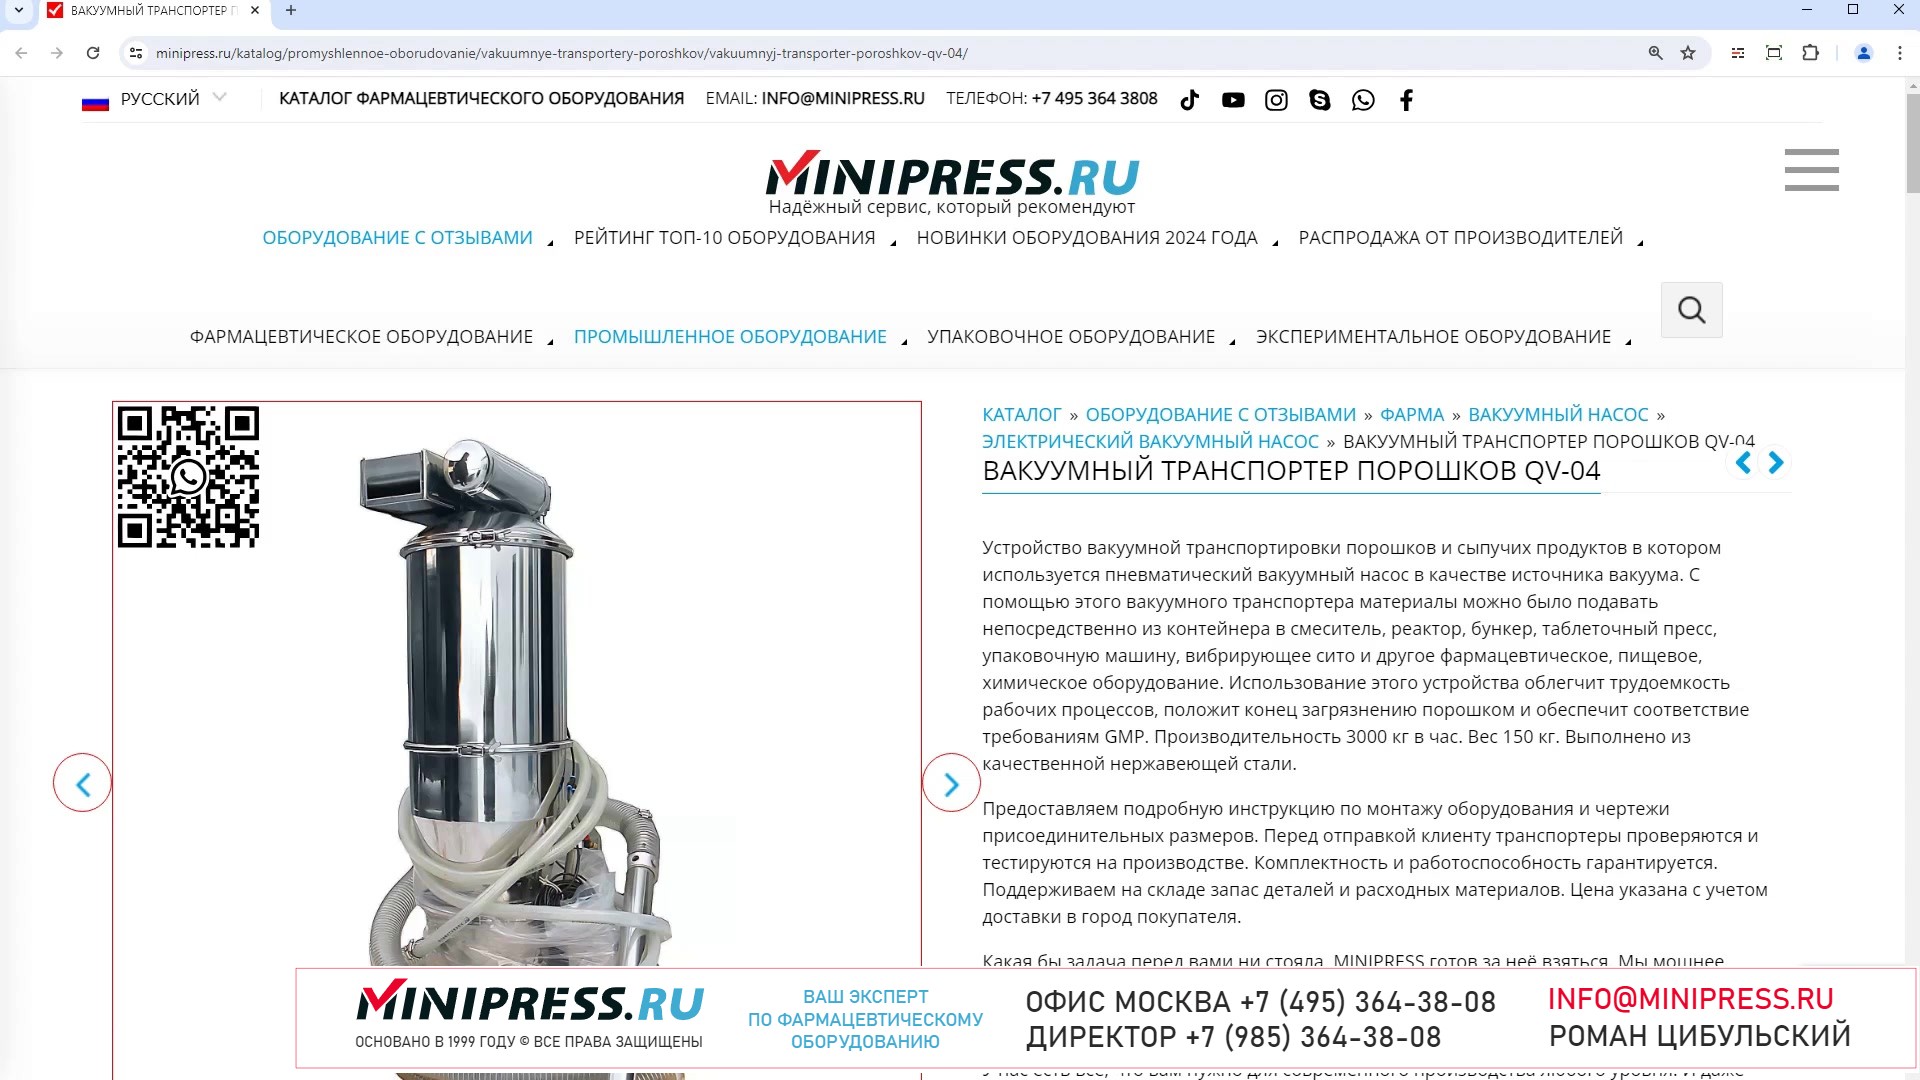 Minipress.ru Вакуумный транспортер порошков QV-04